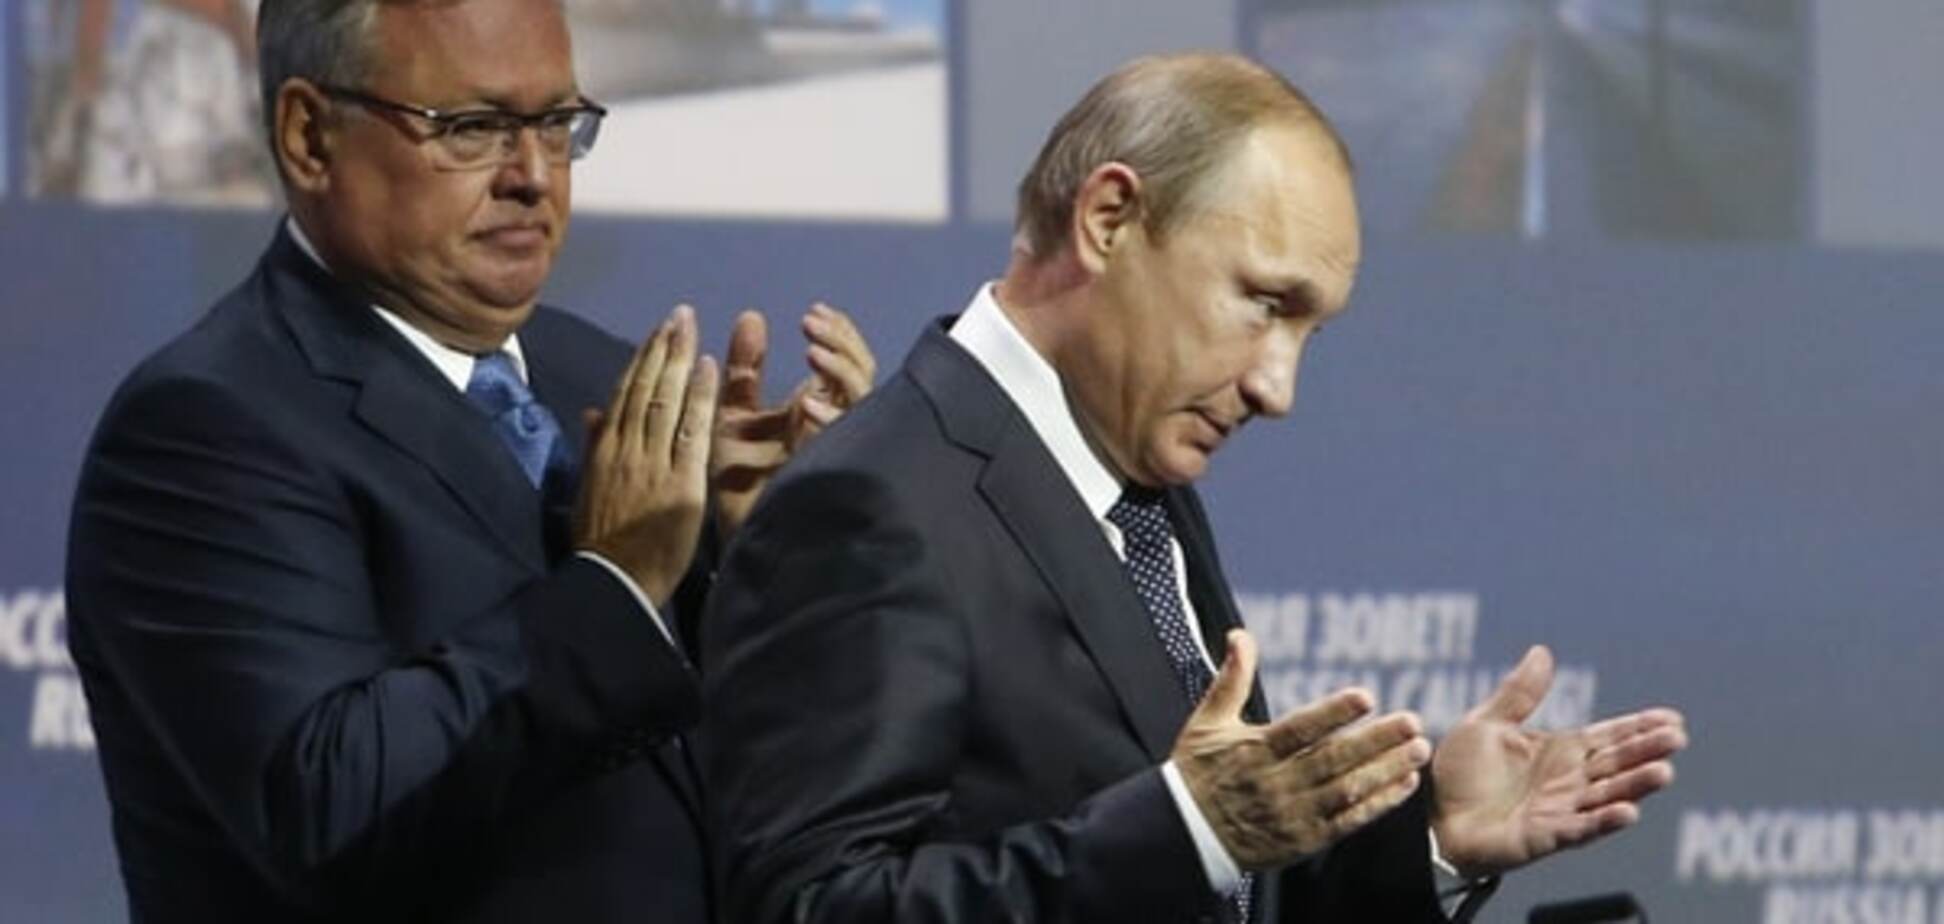 Портников: Путину пора думать о судьях, а не избирателях